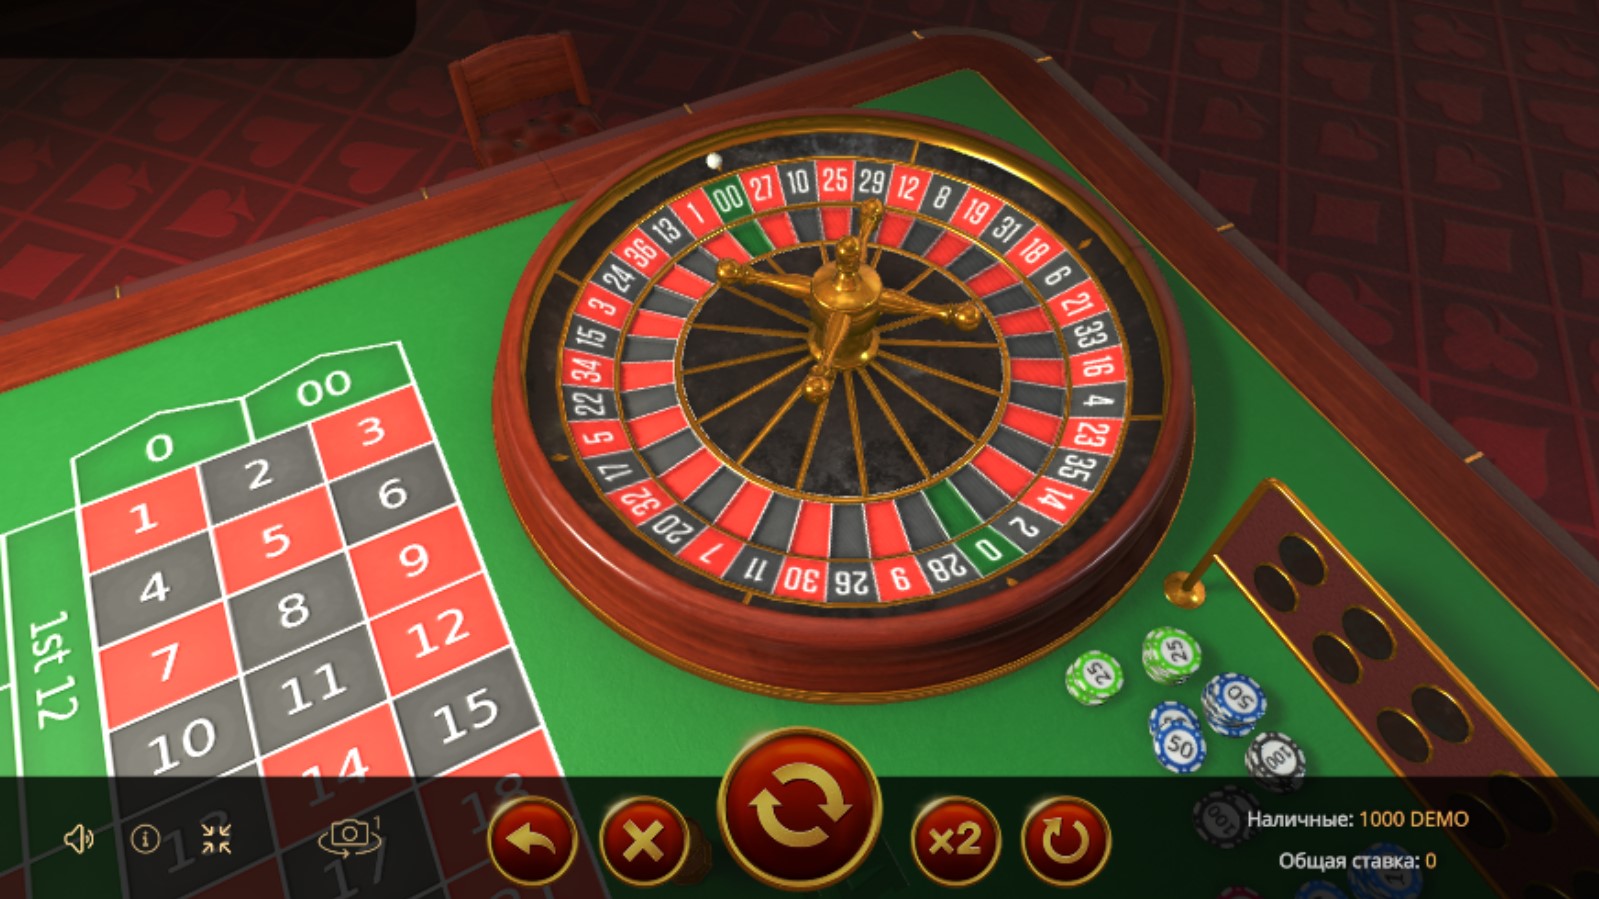 Demo kazino